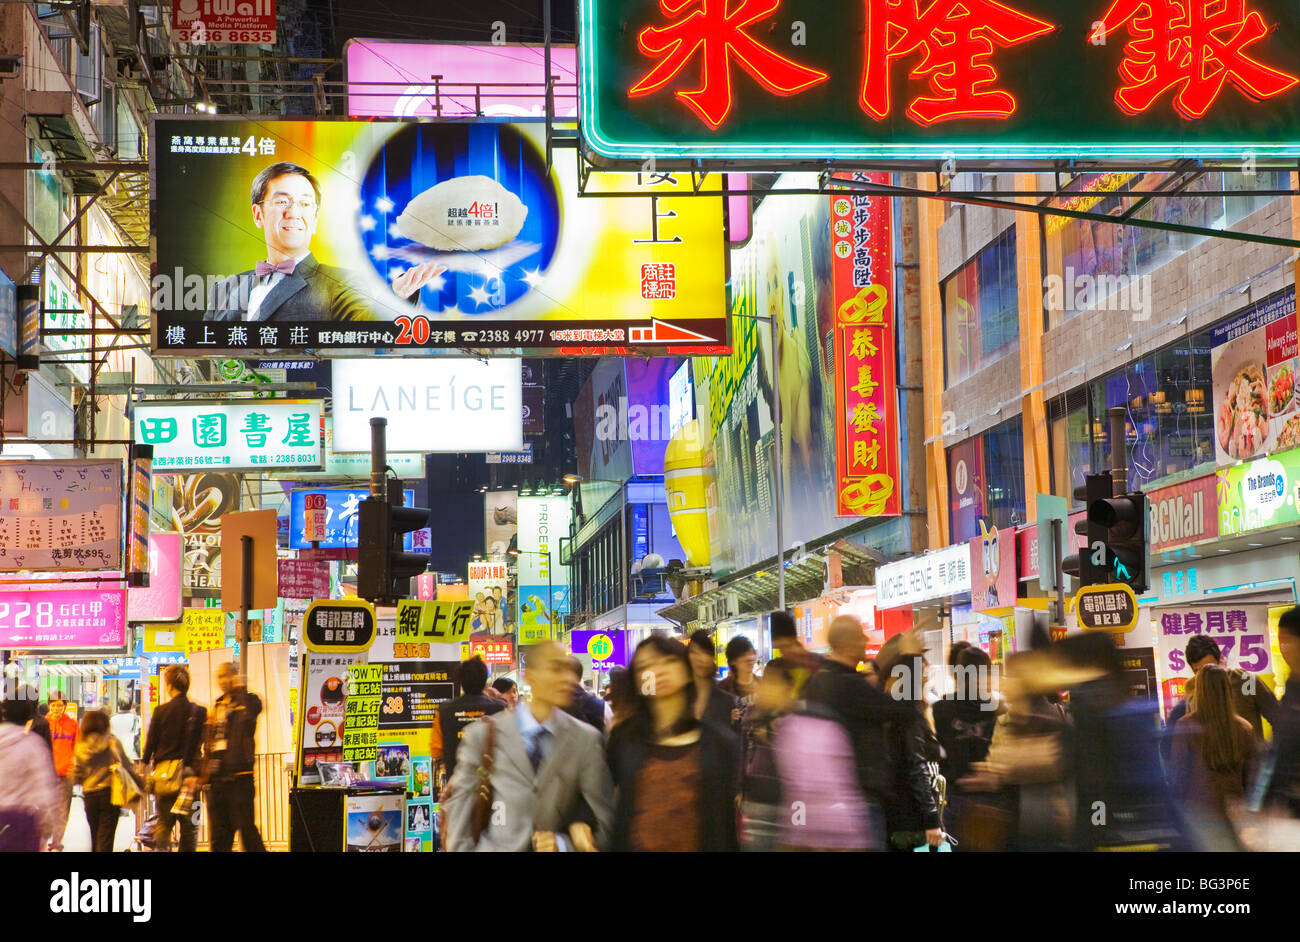 China, Hong Kong, Kowloon Stock Photo - Alamy